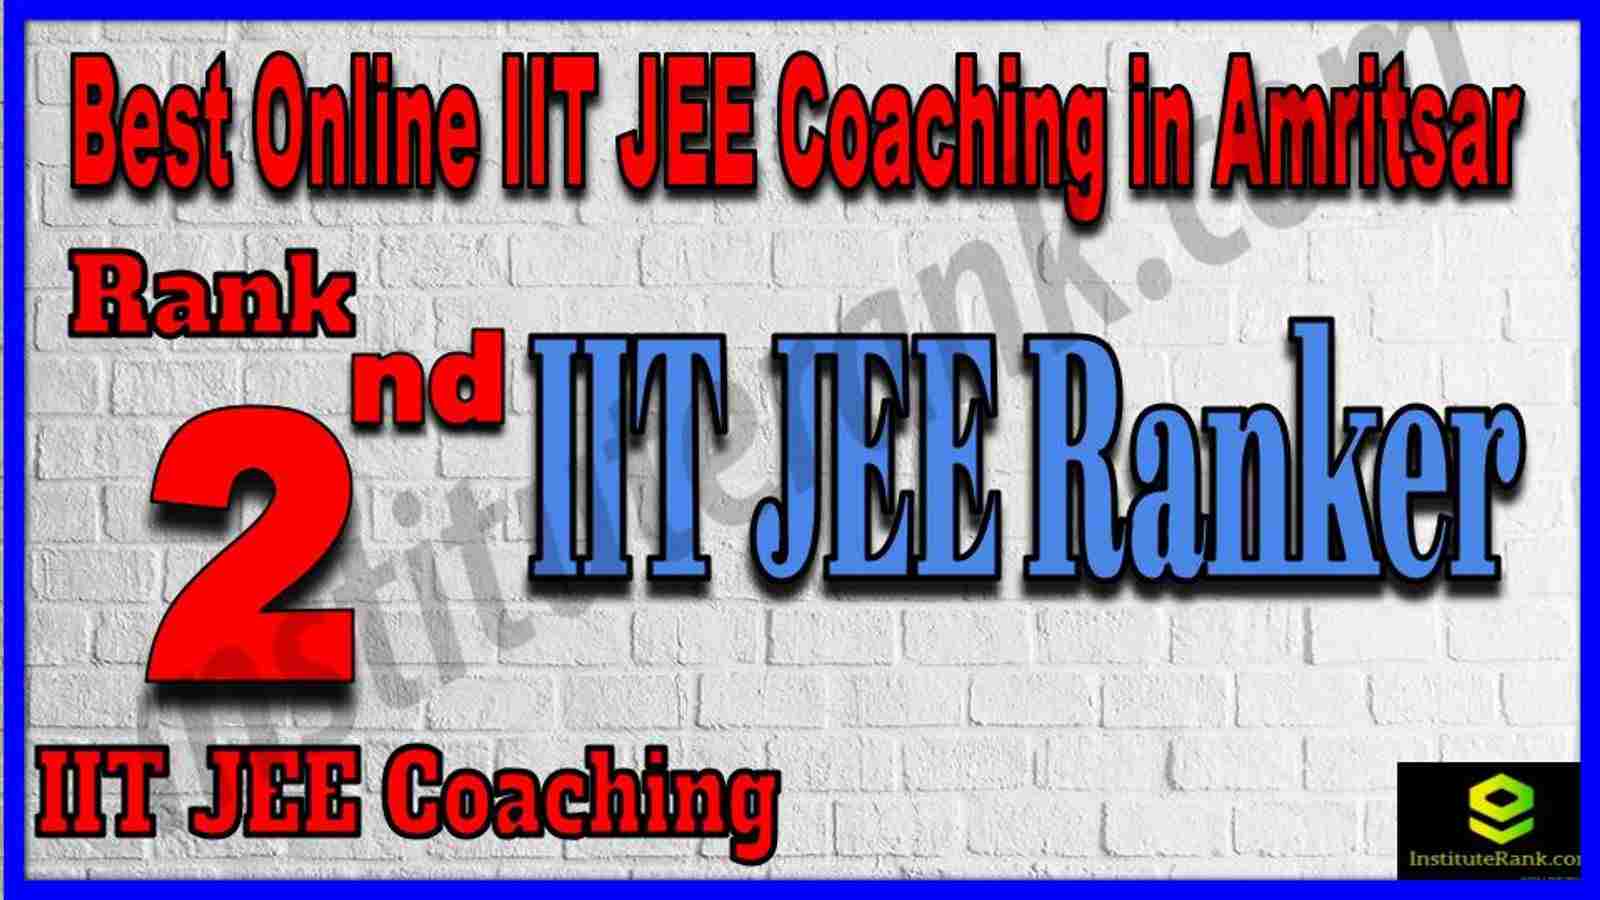 Rank 2nd Best Online IIT JEE Coaching in Amritsar